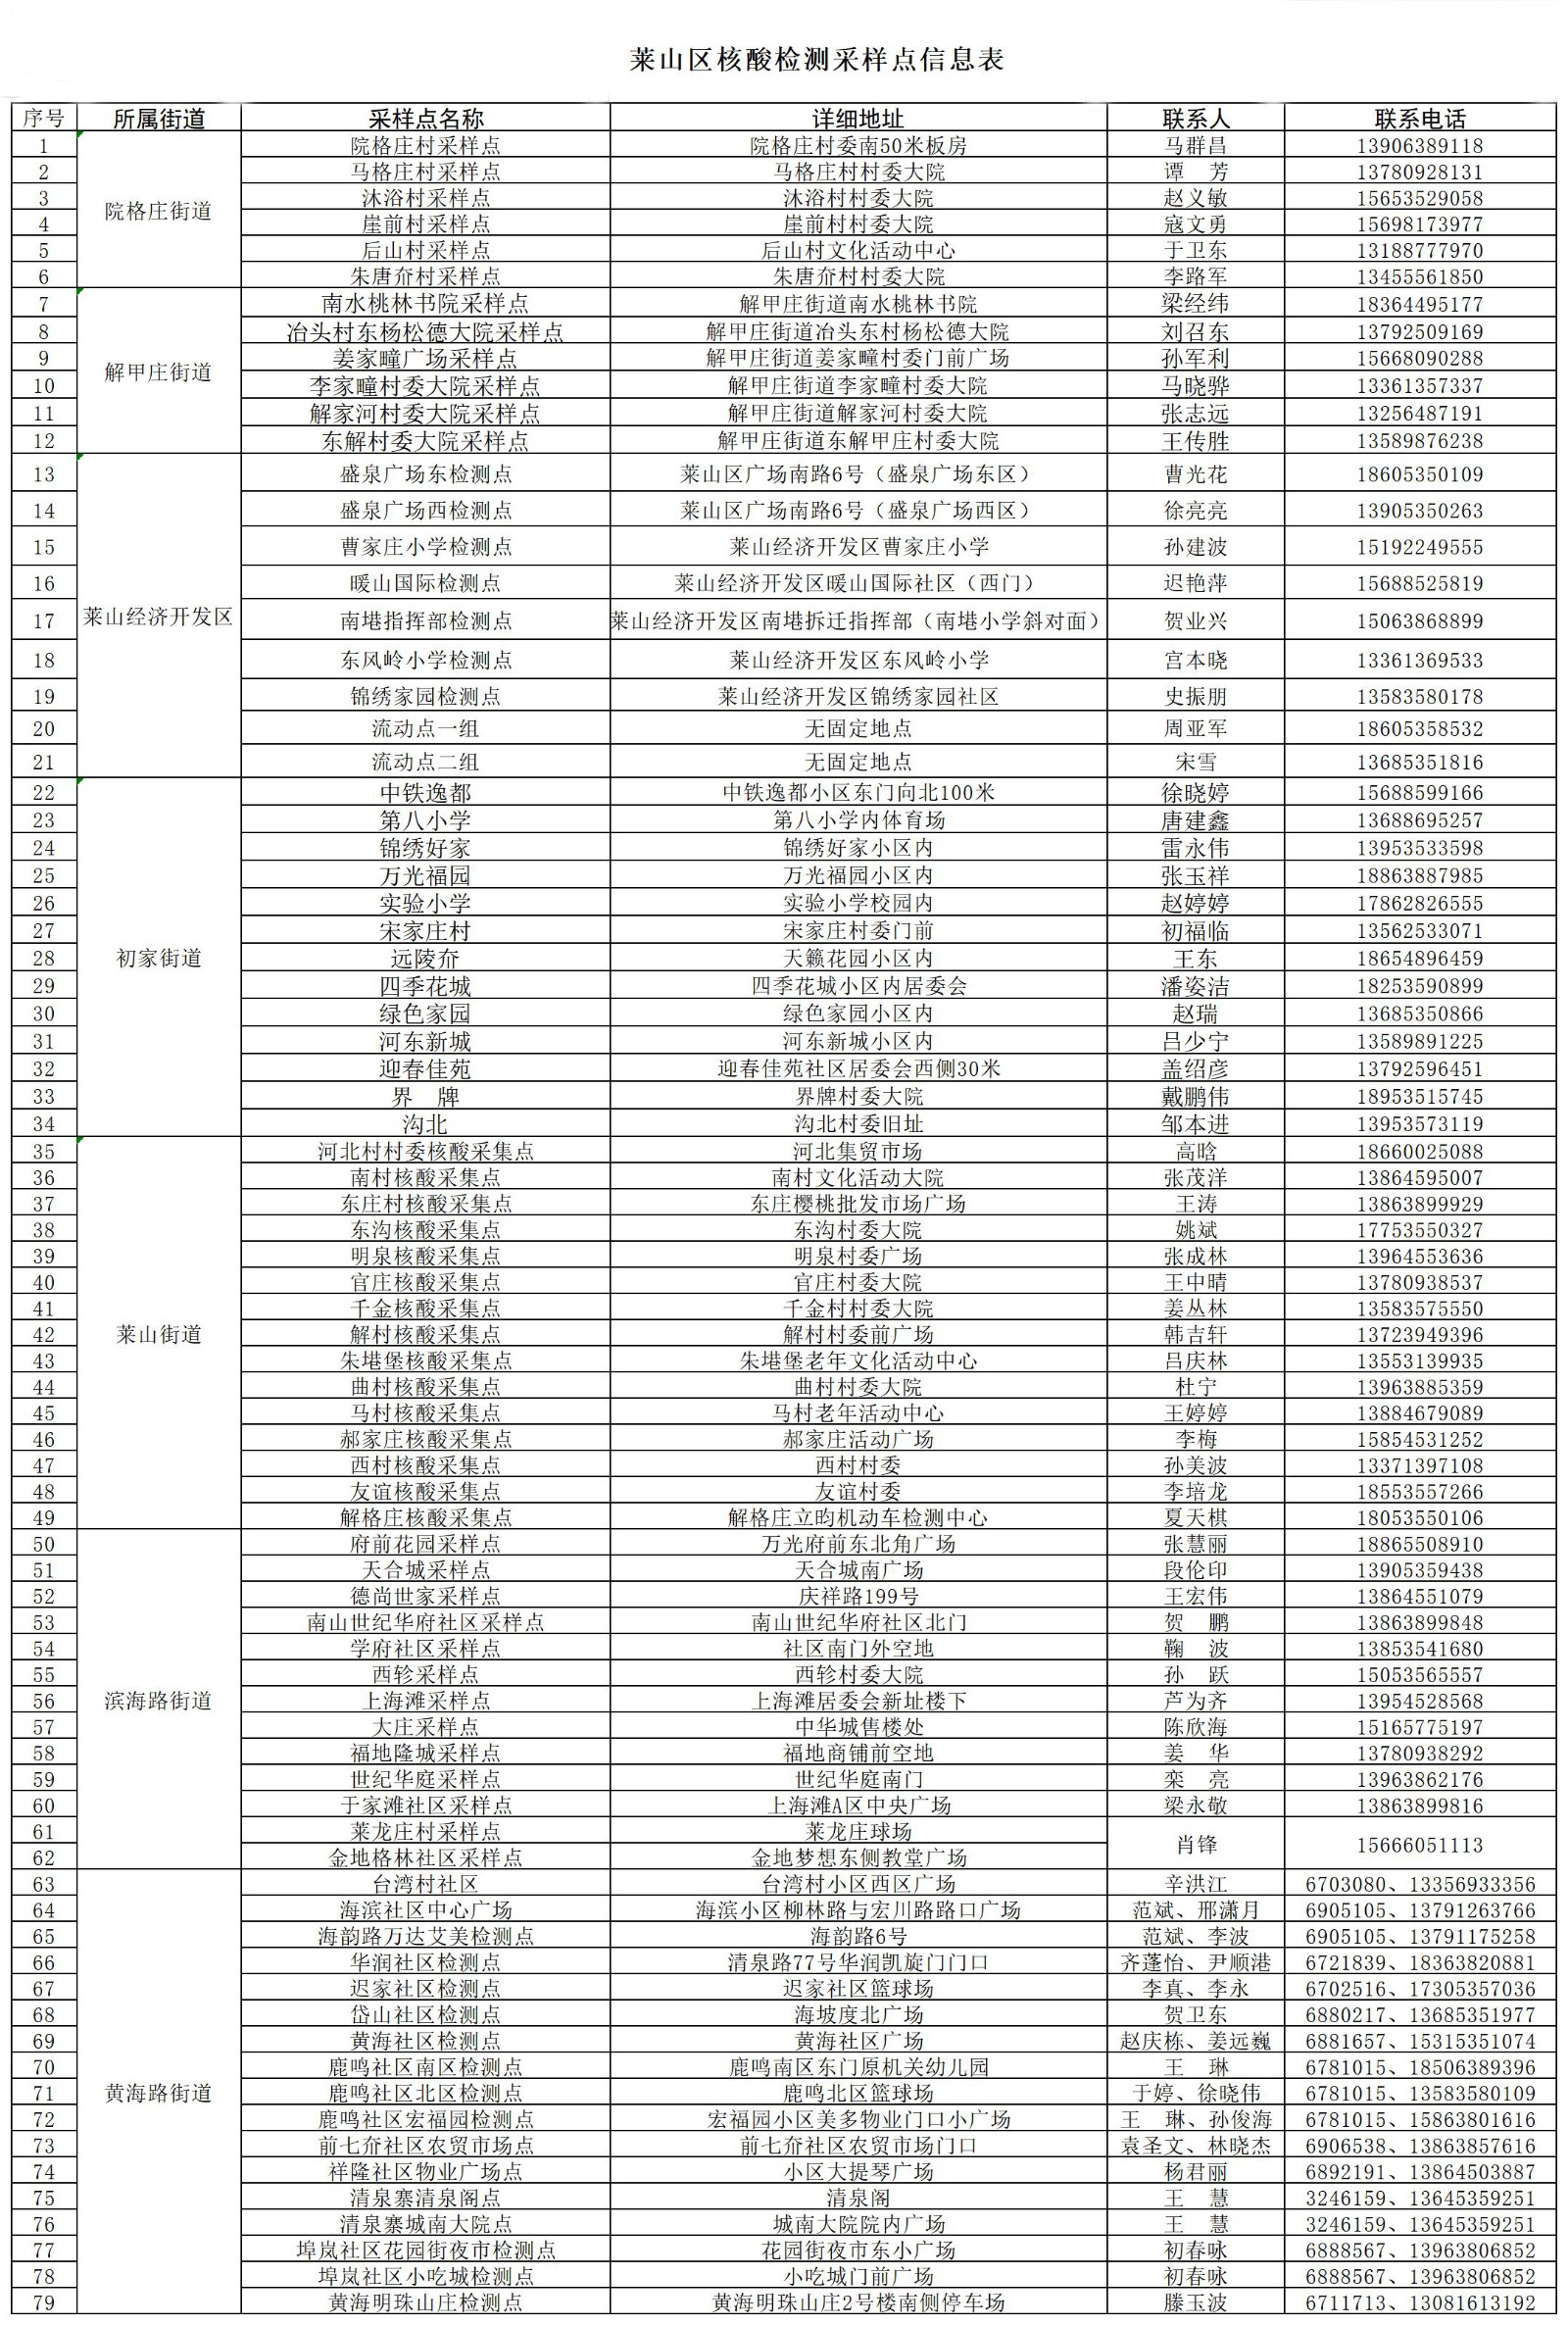 附件：莱山区核酸检测采样点信息表